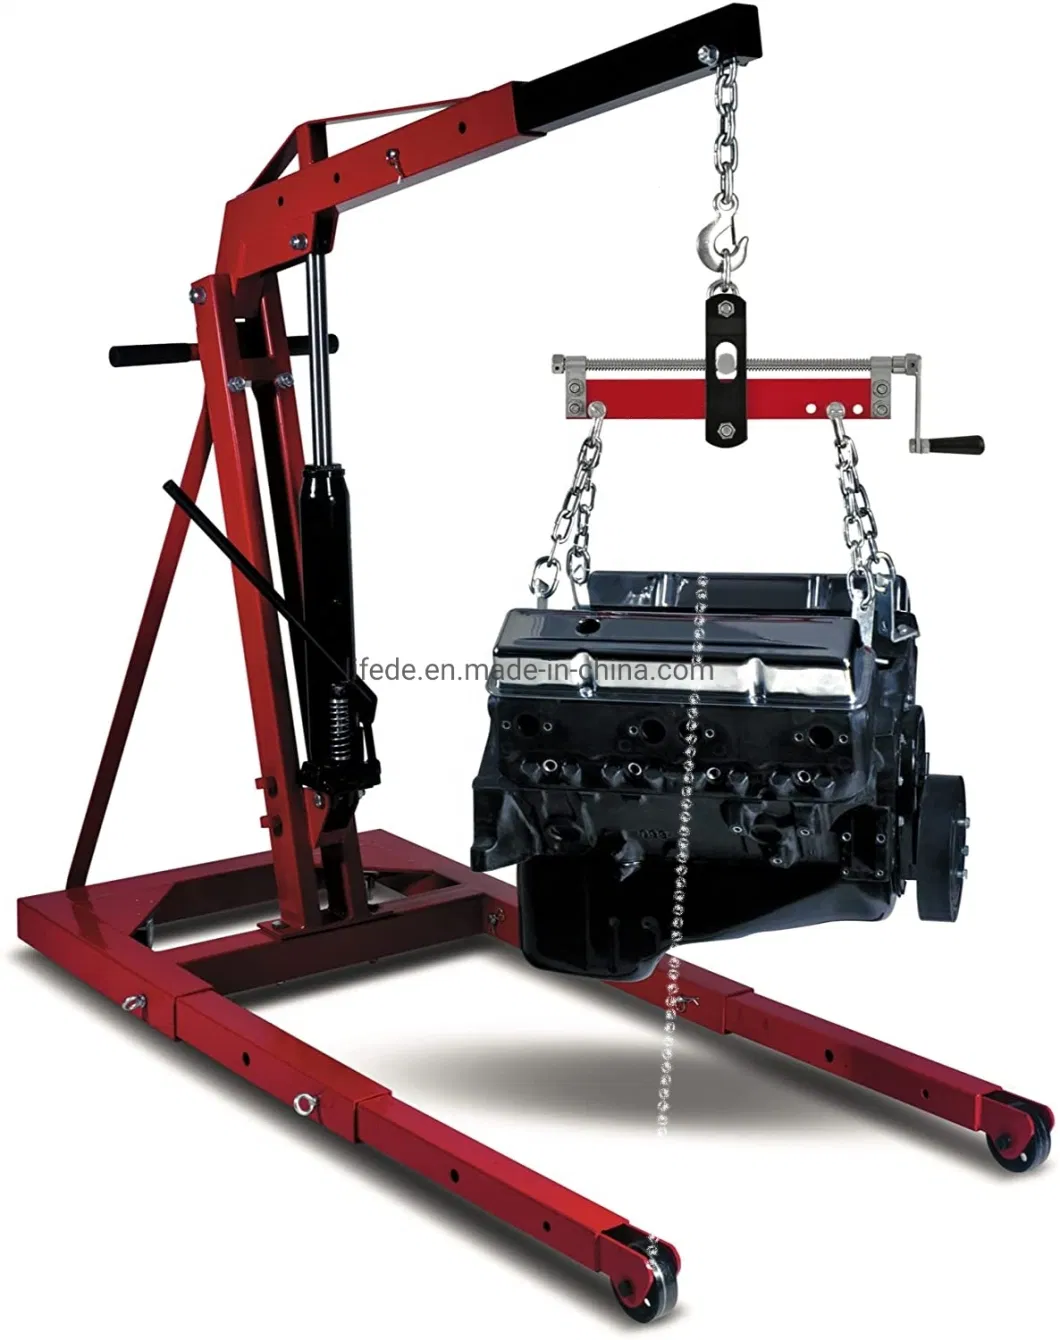 Adjustable Engine Load Leveler Cranking Engine Hoist Leveler Sling with Hook for Shop Crane